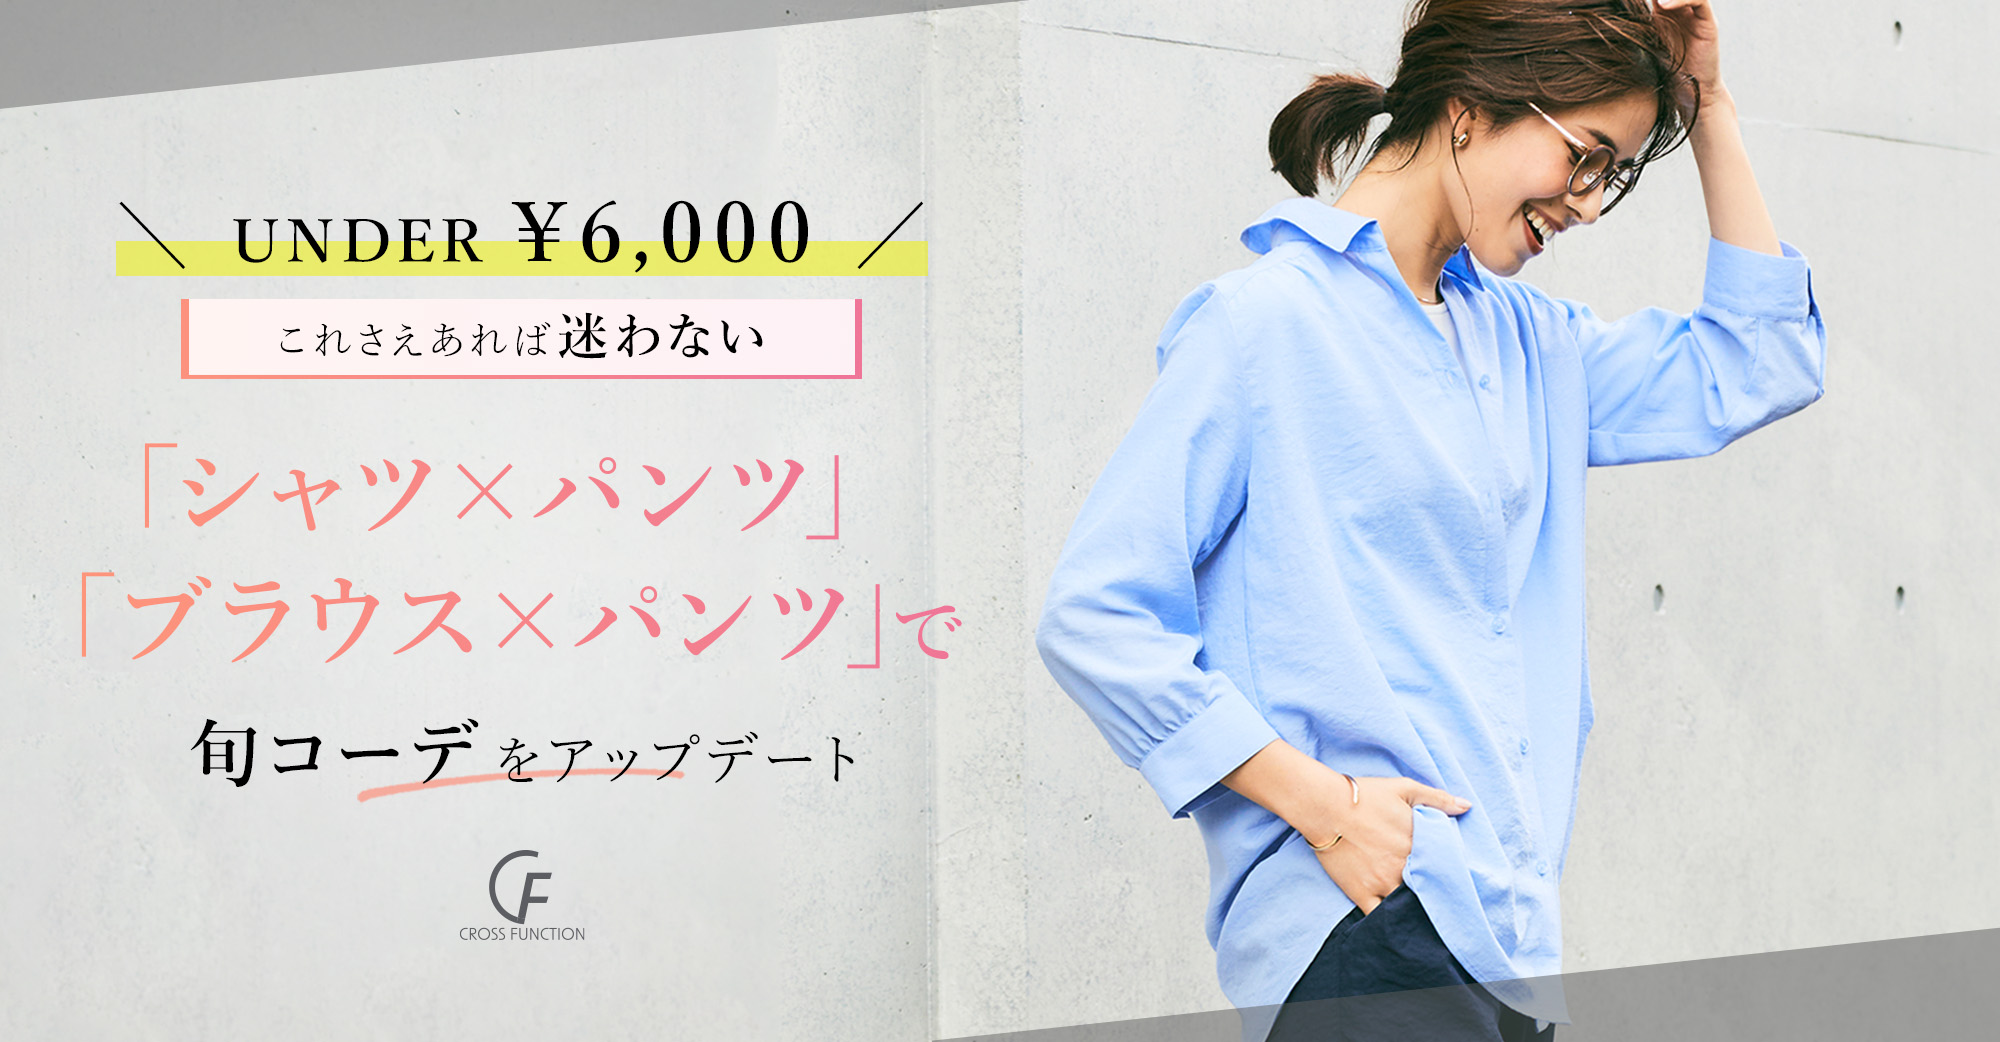 UNDER ¥6,000 これさえあれば迷わない「シャツ＆ブラウス×パンツ」で旬コーデをアップデート